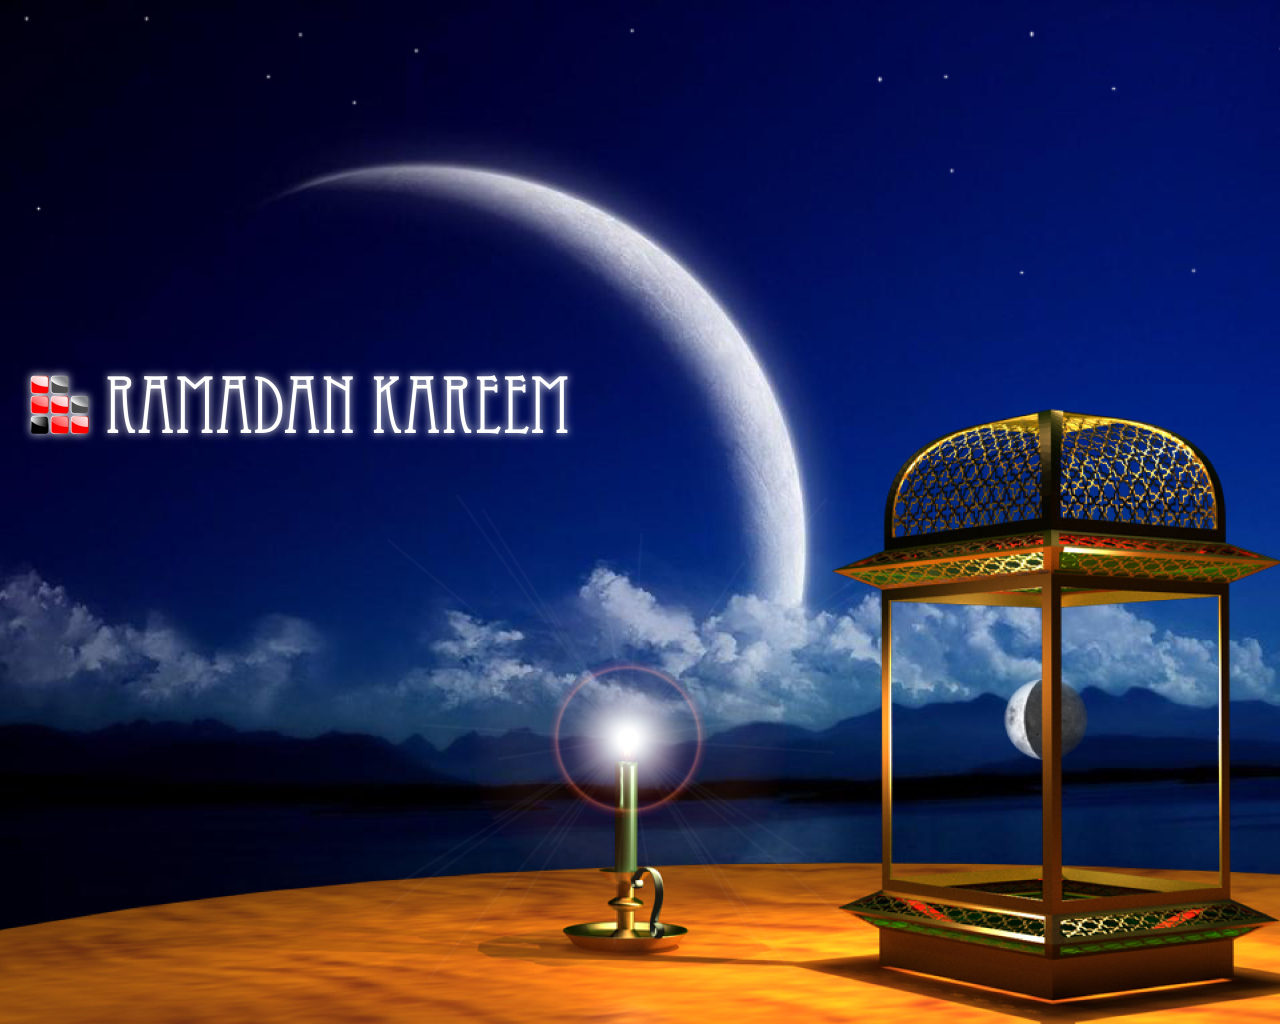 Holy candle Ramadan